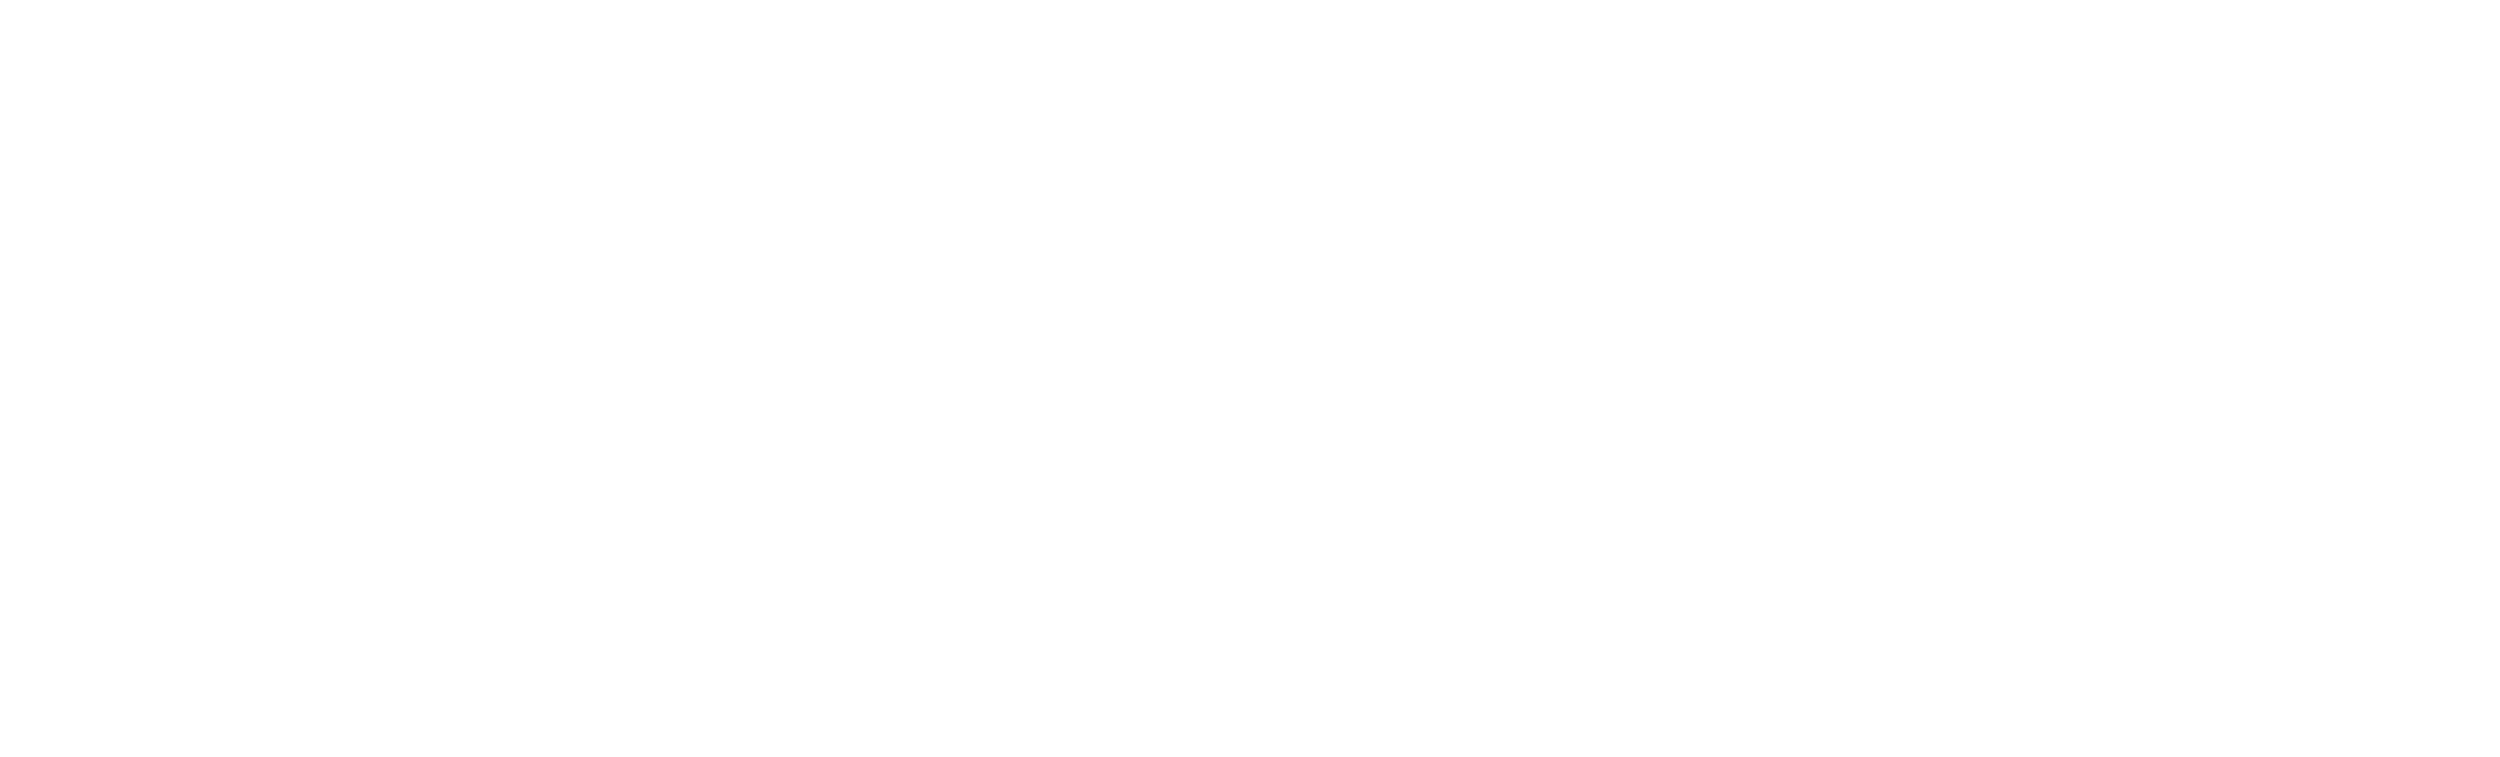 Van Buren Management